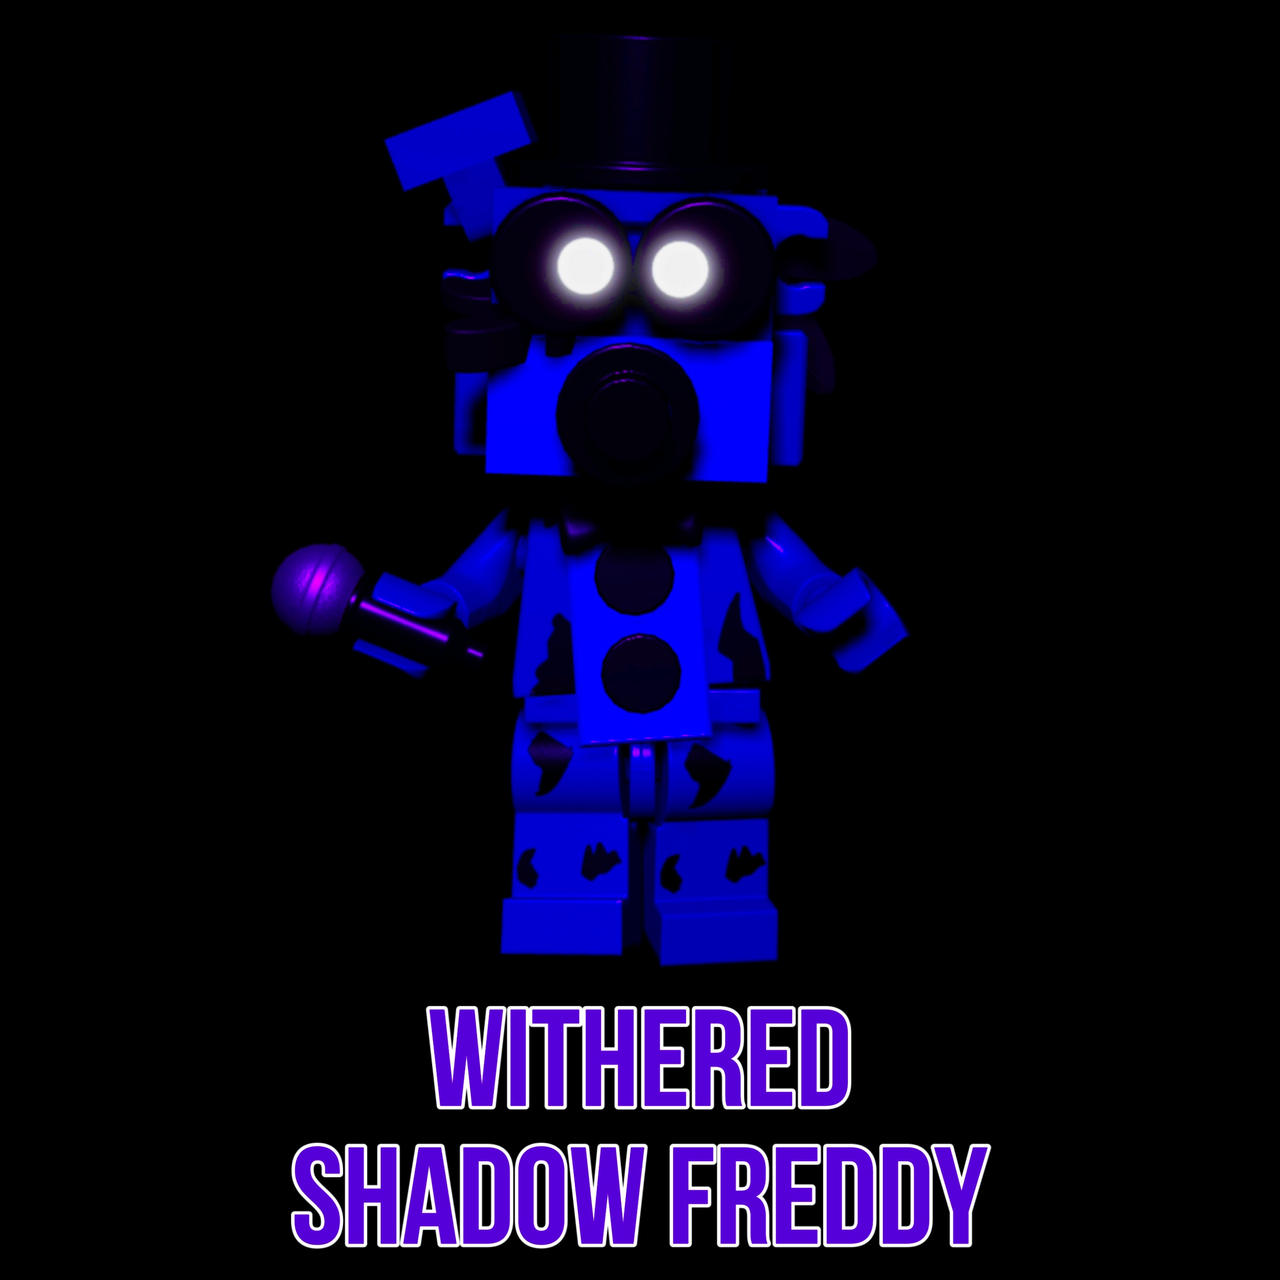 FNAF 2 Shadow Freddy full body by Enderziom2004 on DeviantArt